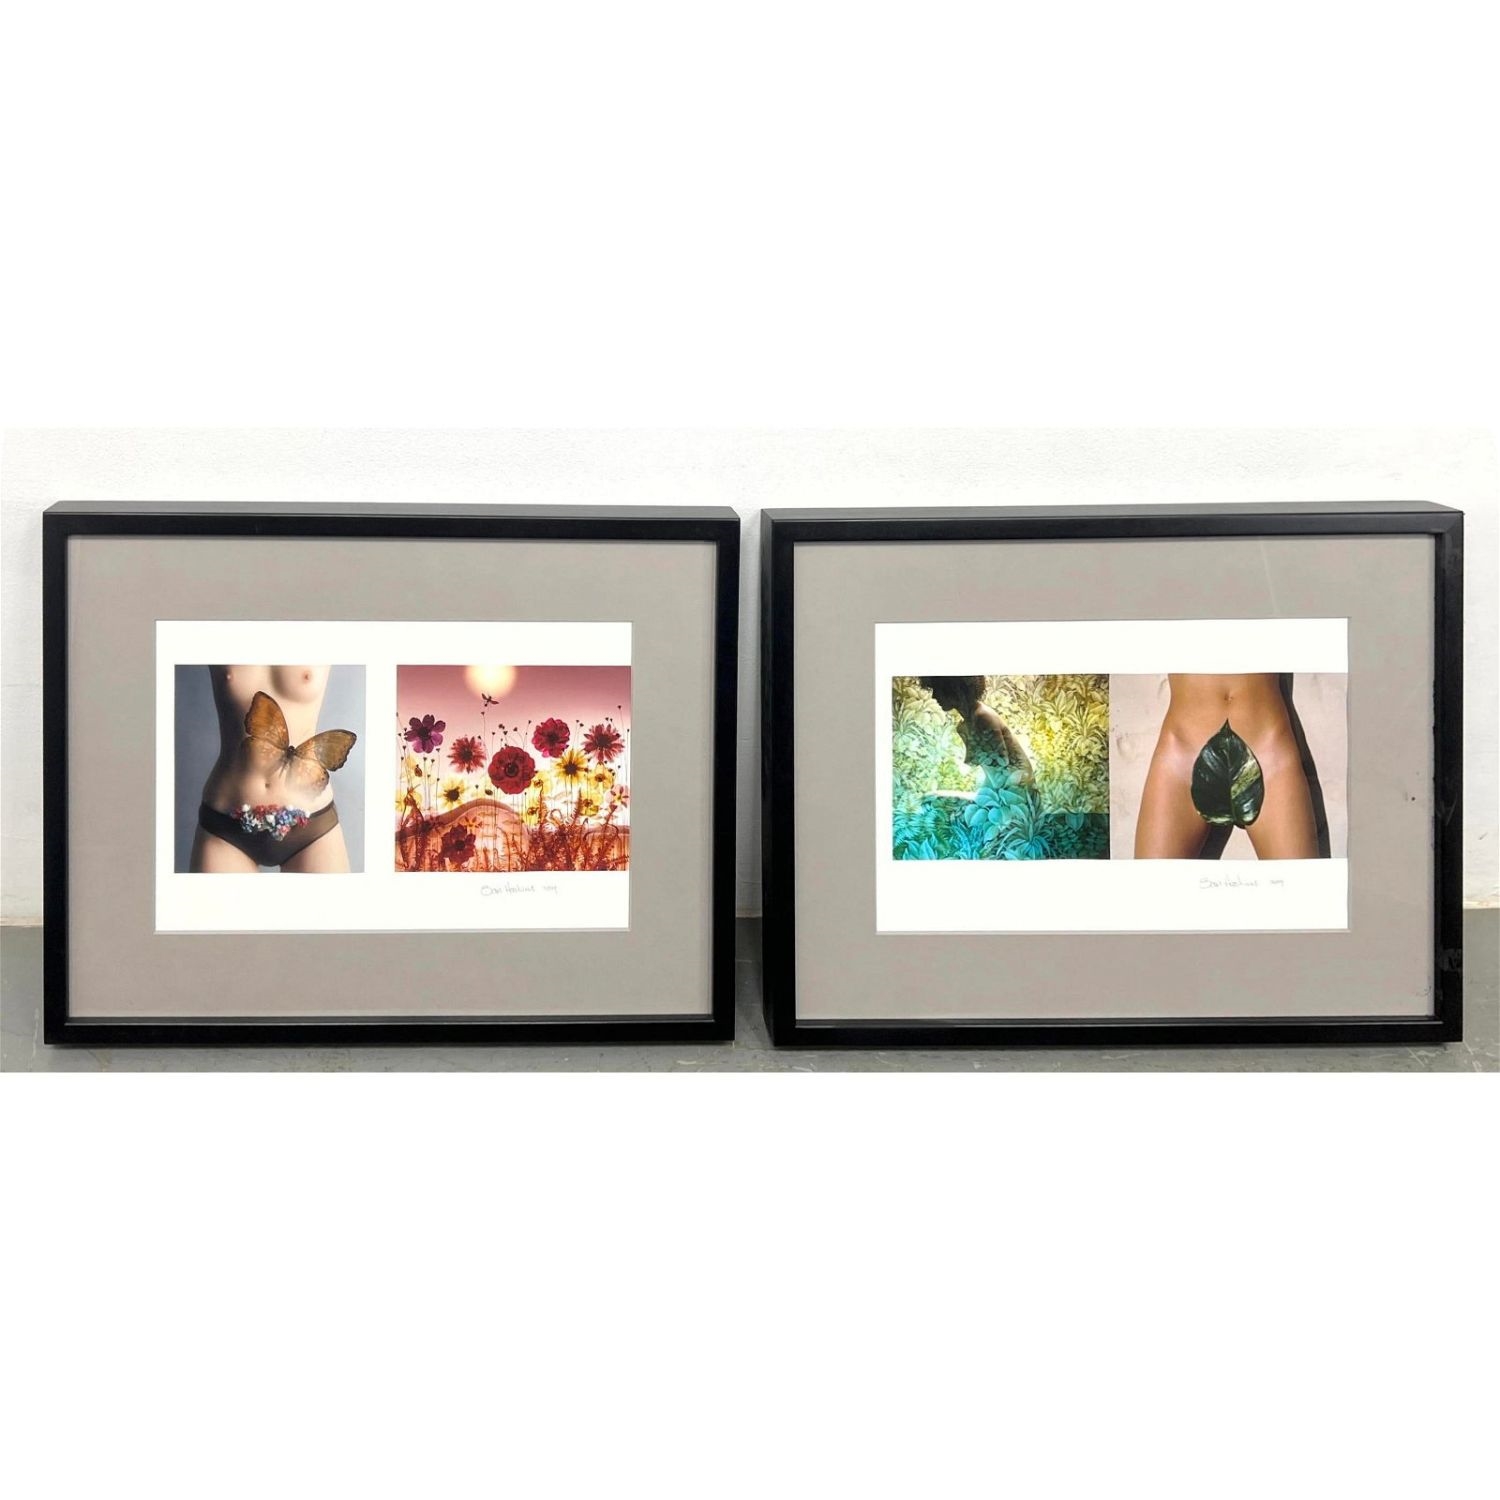 2pc SAM HASKINS Color Photographs in Two Frames - Sam Haskins